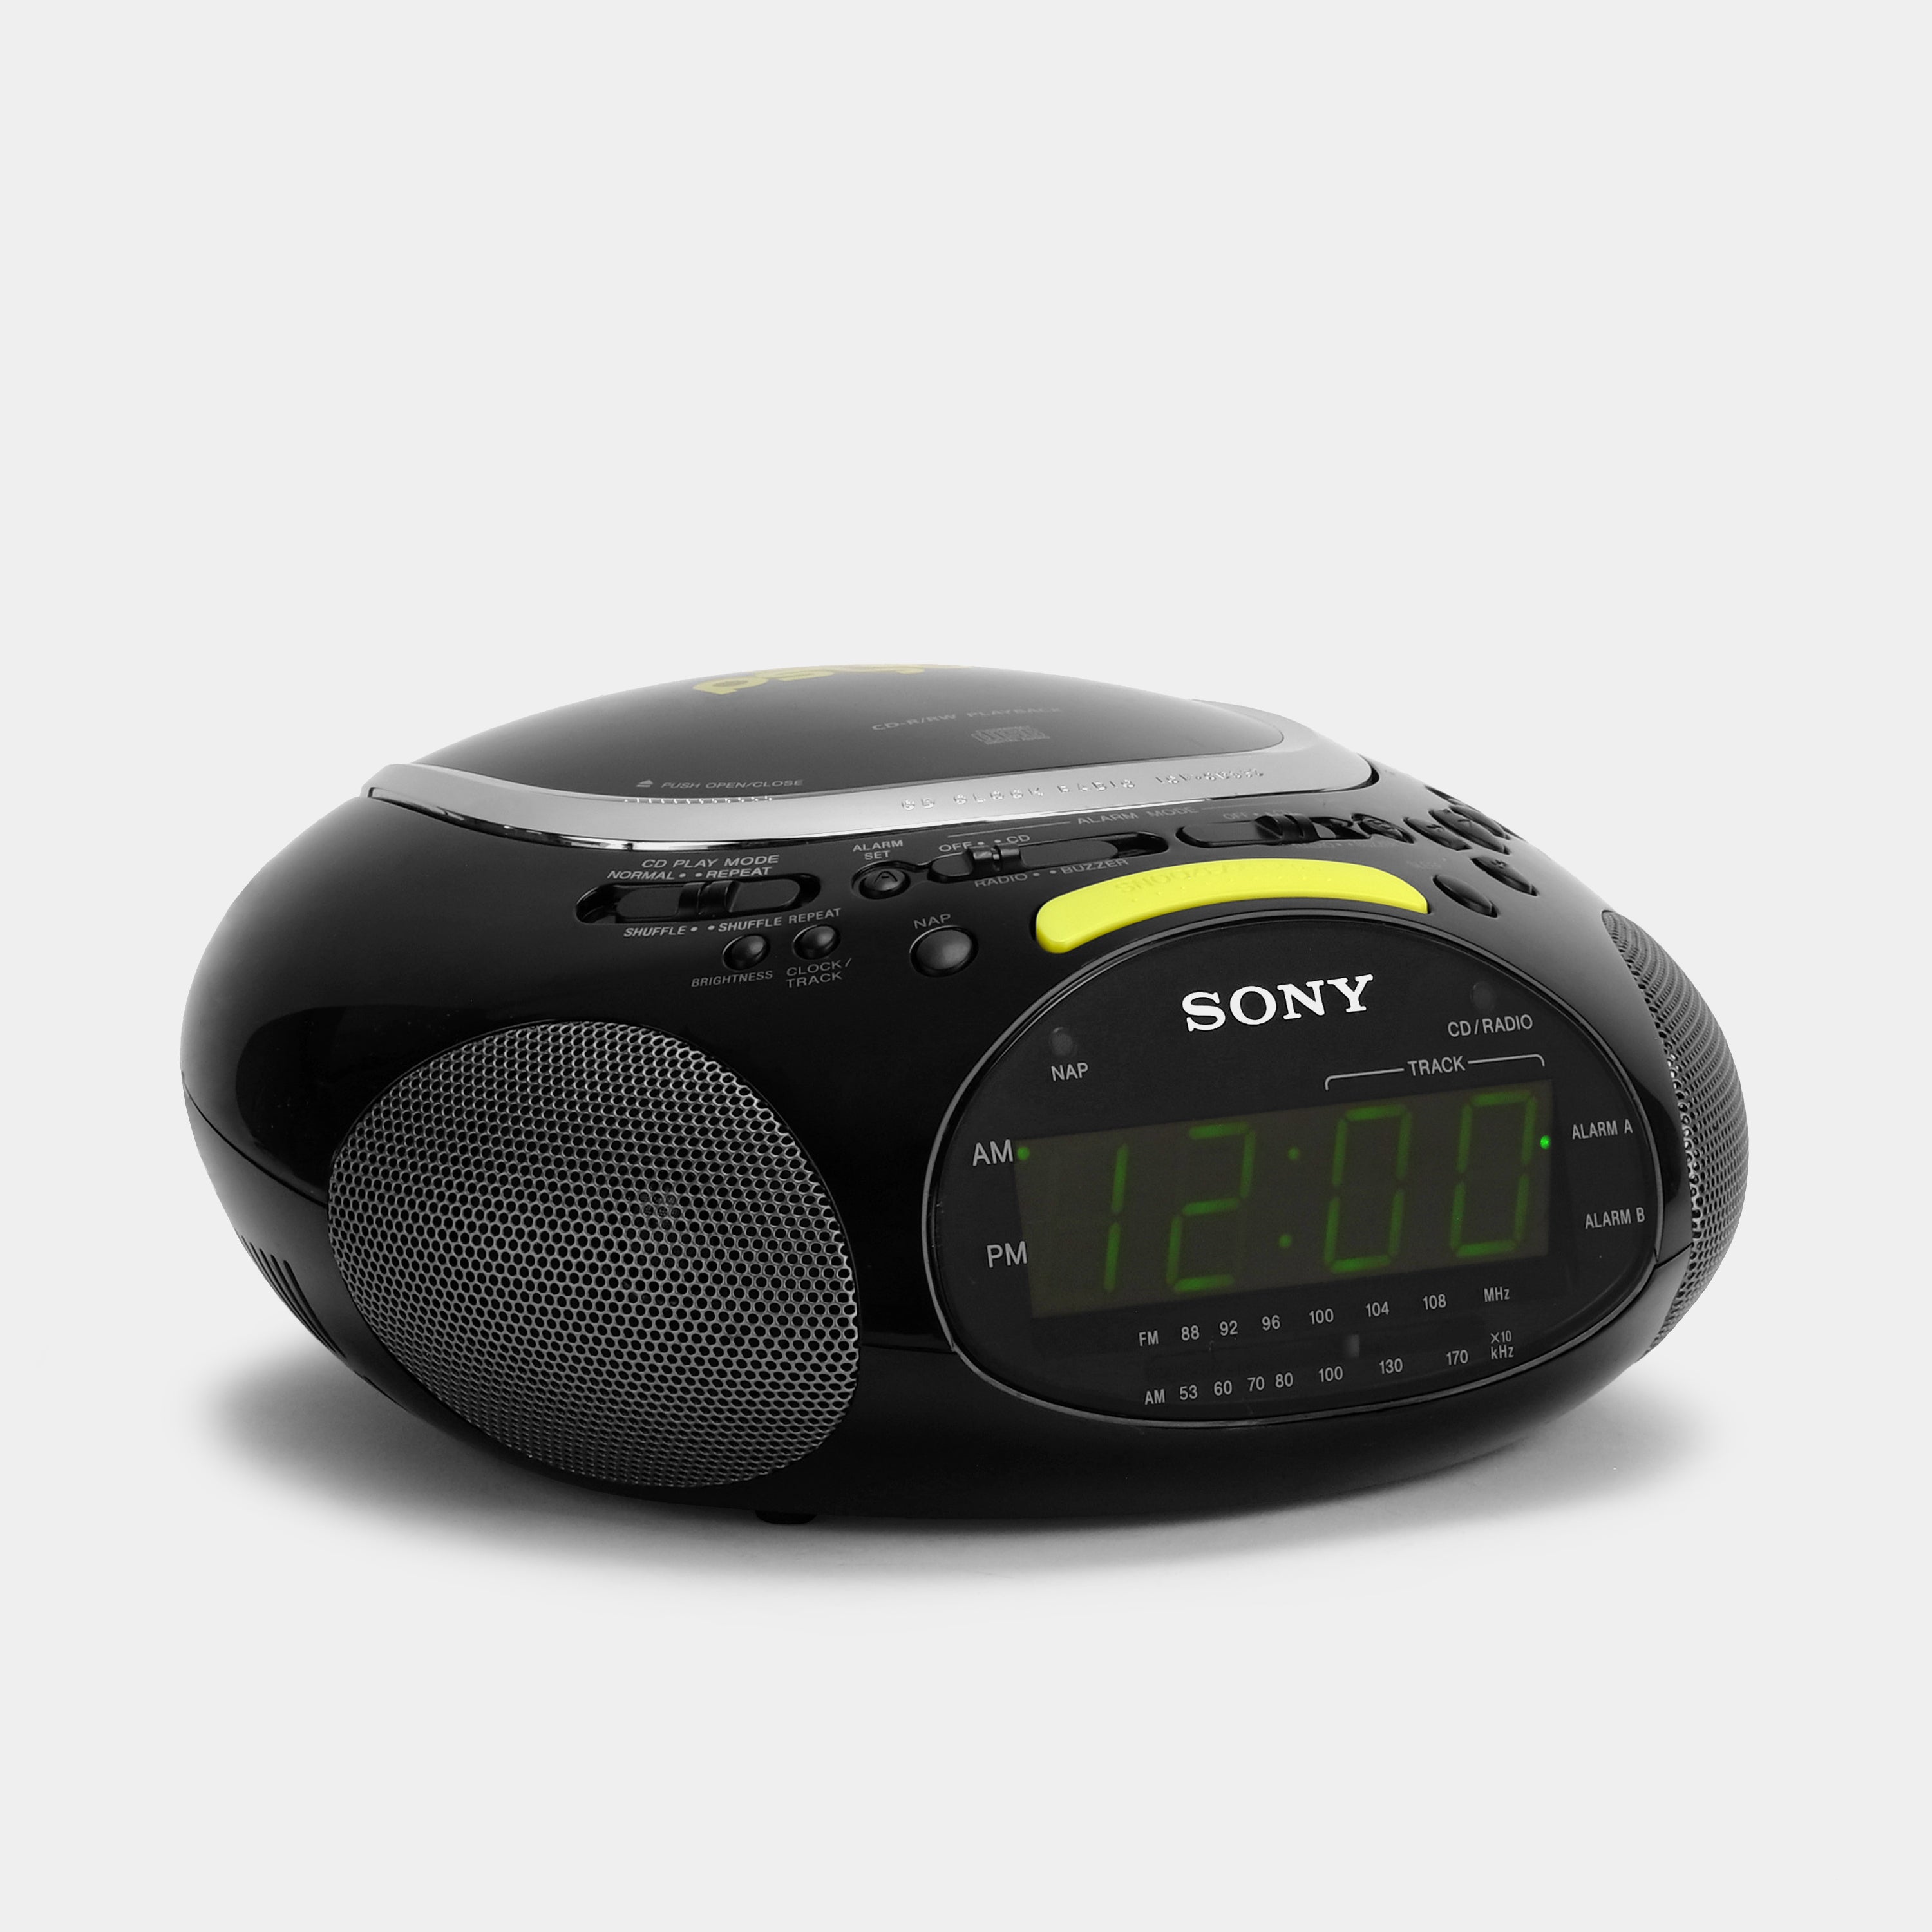 Sony Psyc ICF-CD832 FM/AM CD Clock Radio